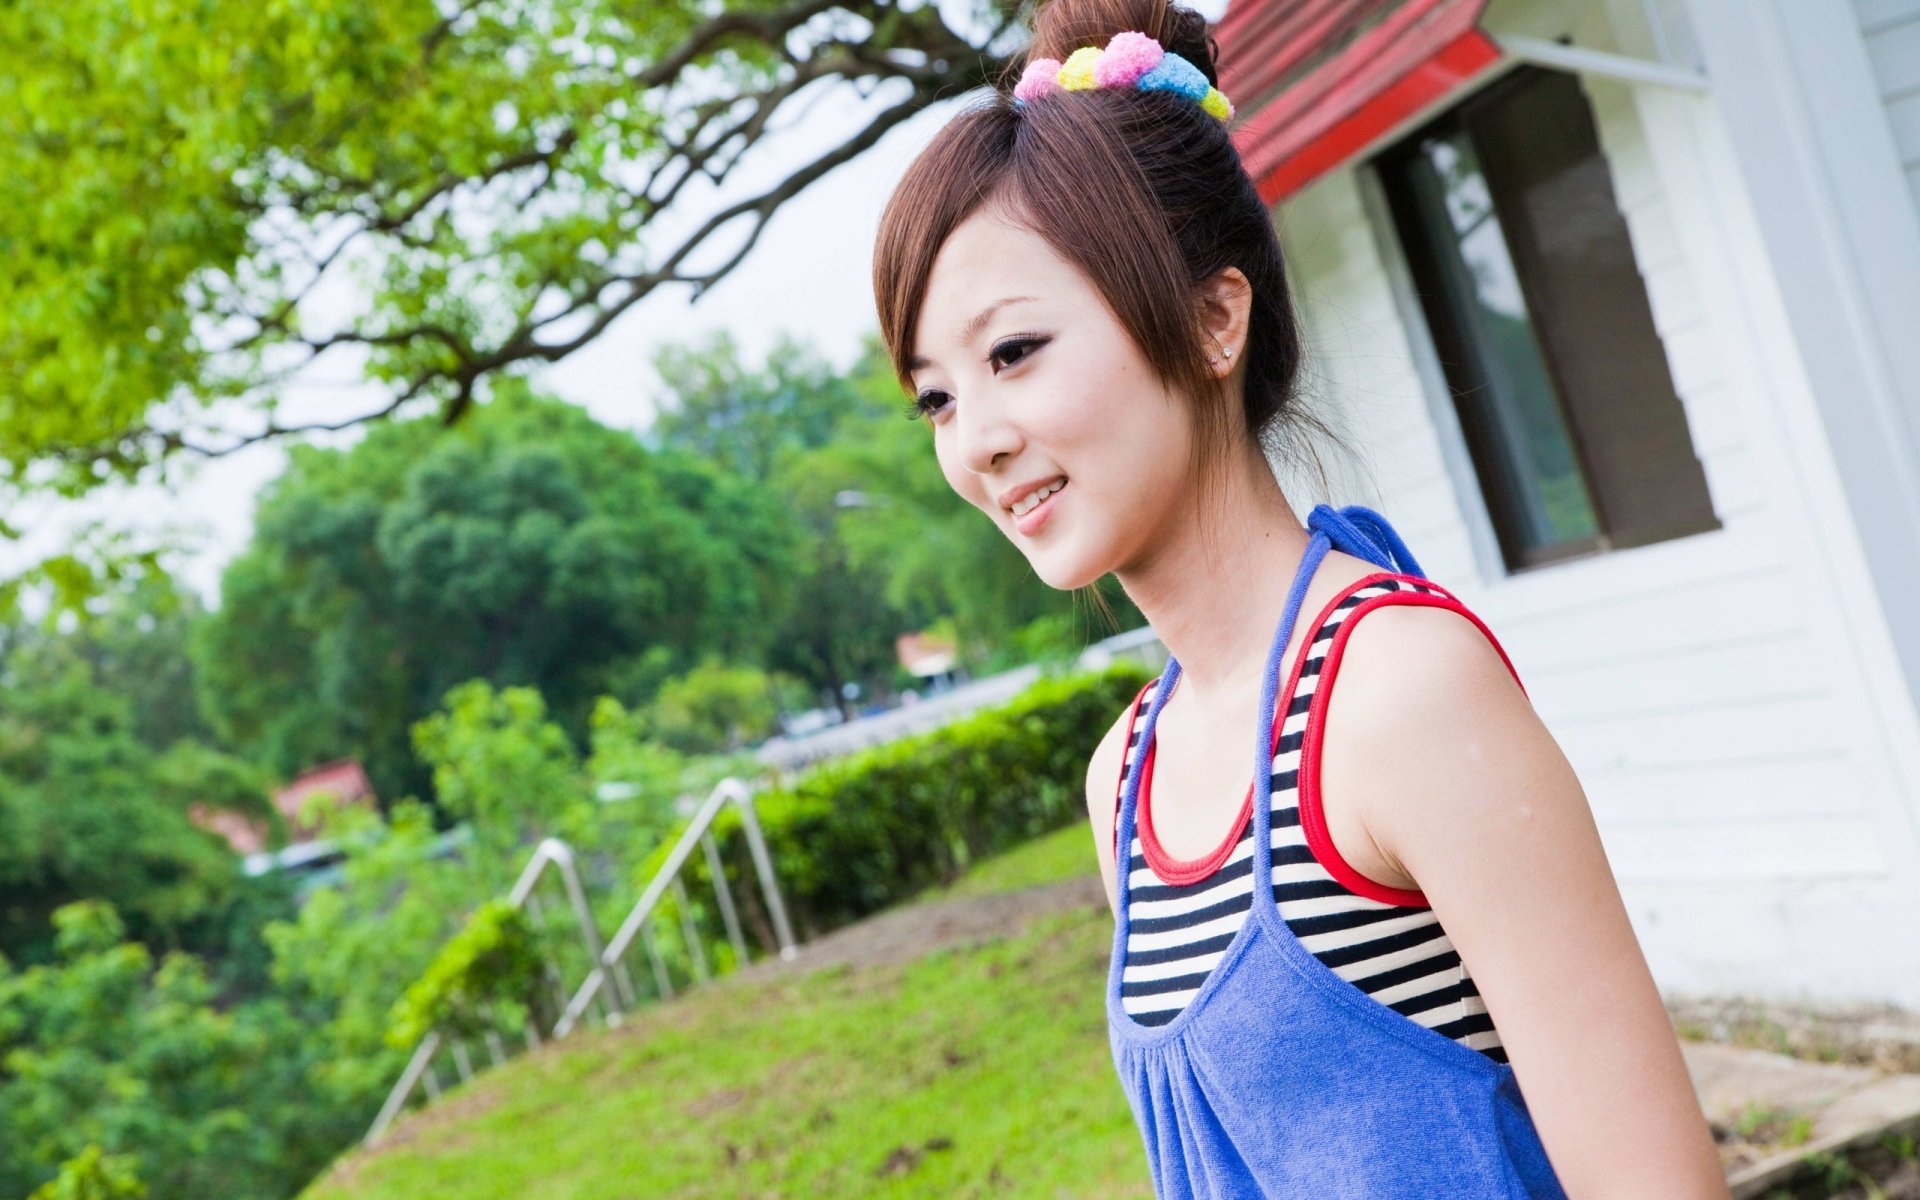 Real mikako schoolgirl capture fantasy fan images